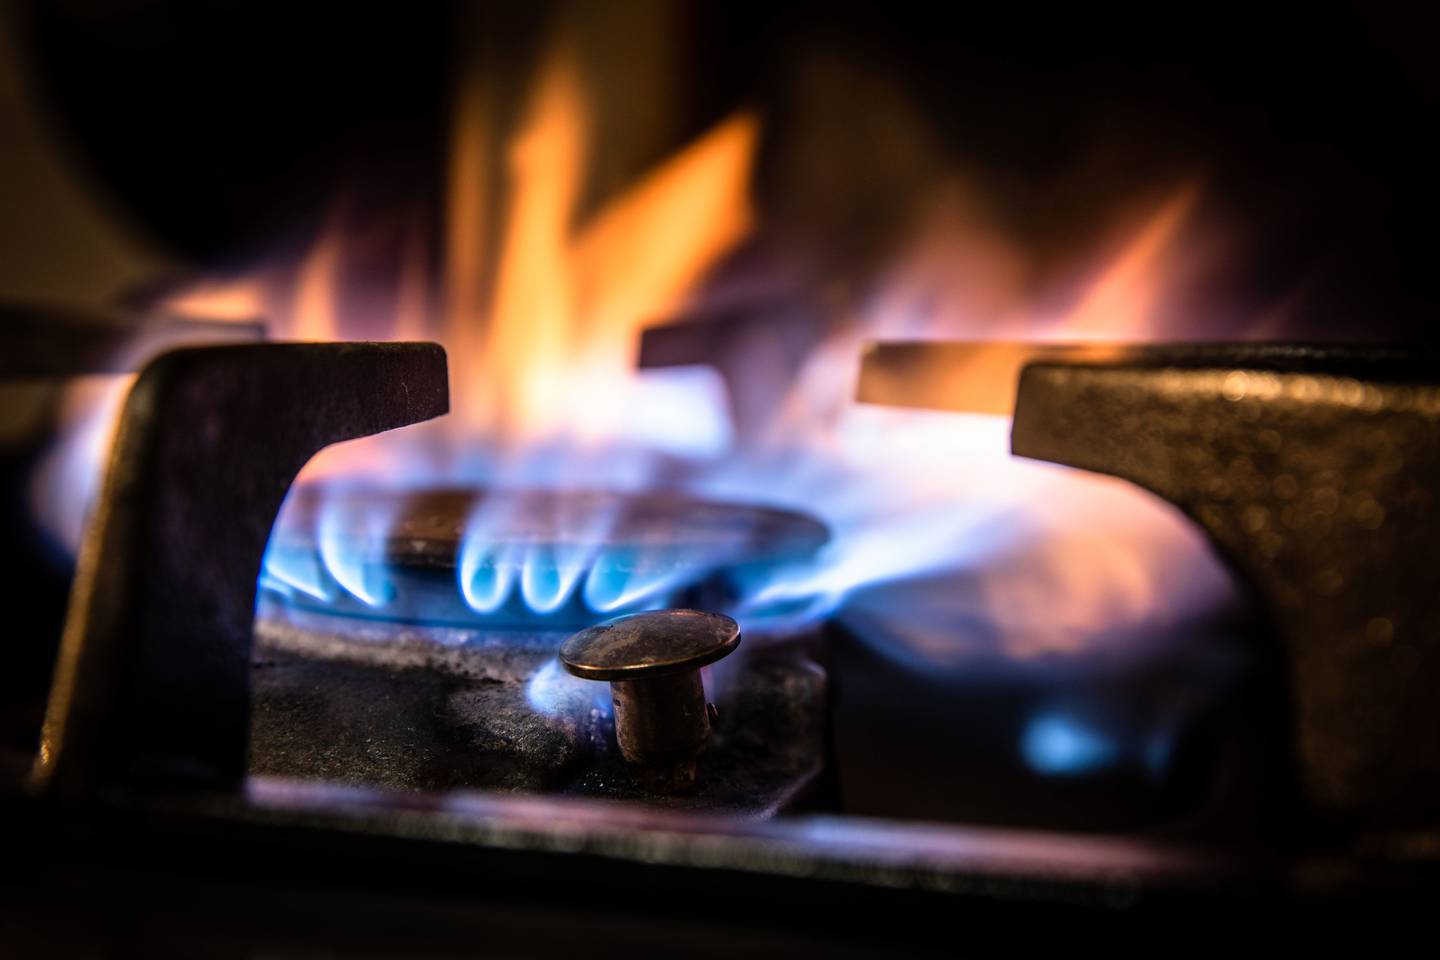 El Gas LP es un combustible utilizado en 80% de los hogares del país para cocinar y calentar agua.